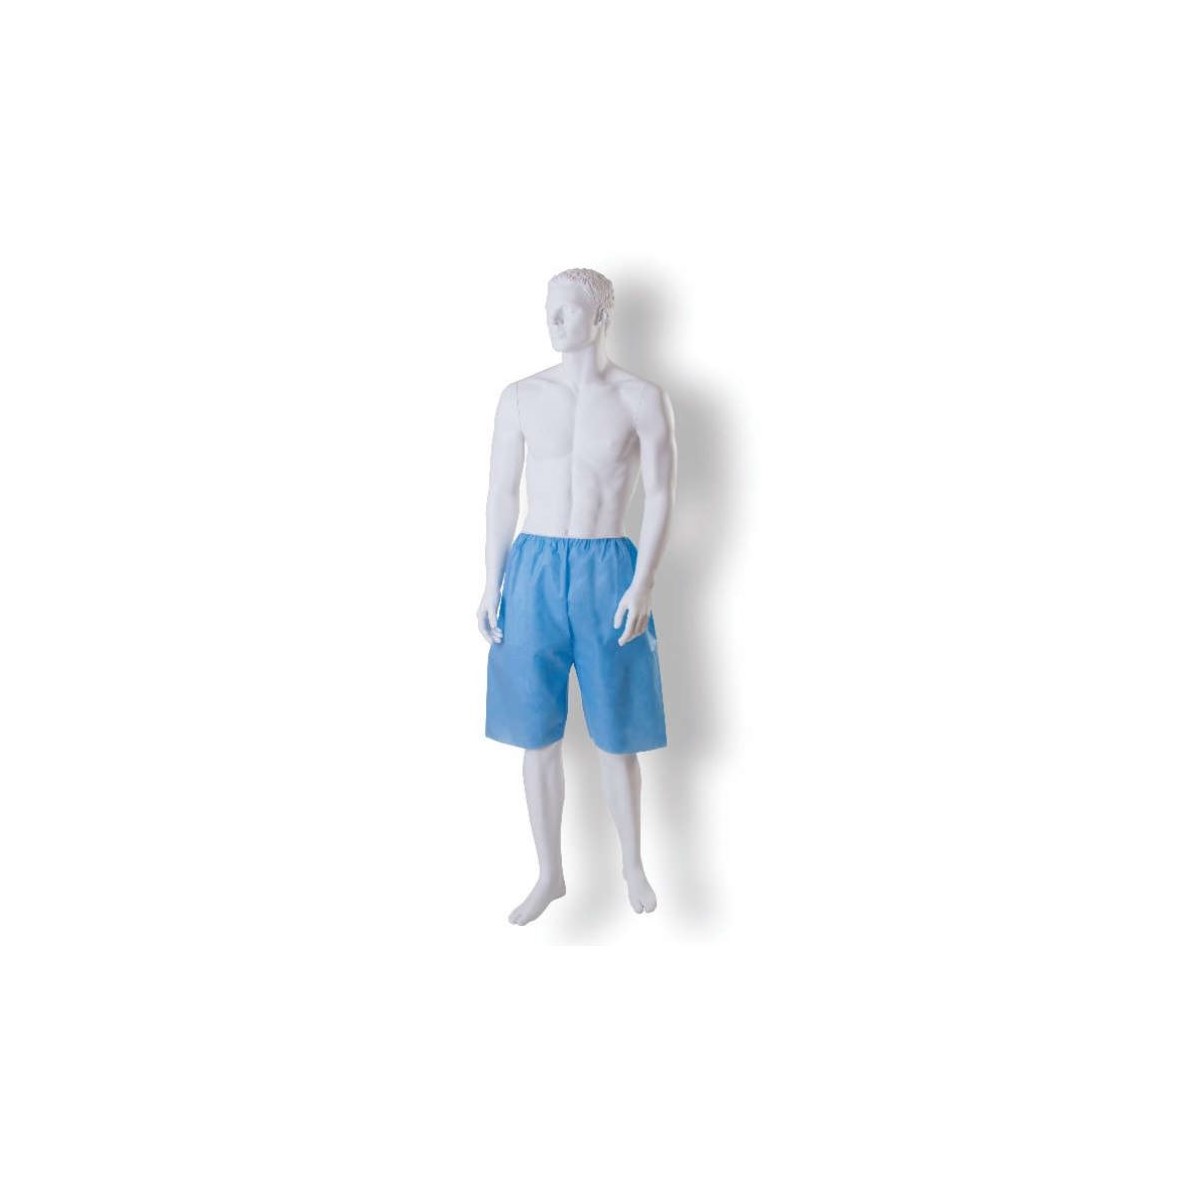 Pantaloni colonscopia in sms 35g Colore azzurro, Taglia unica - 10 pz